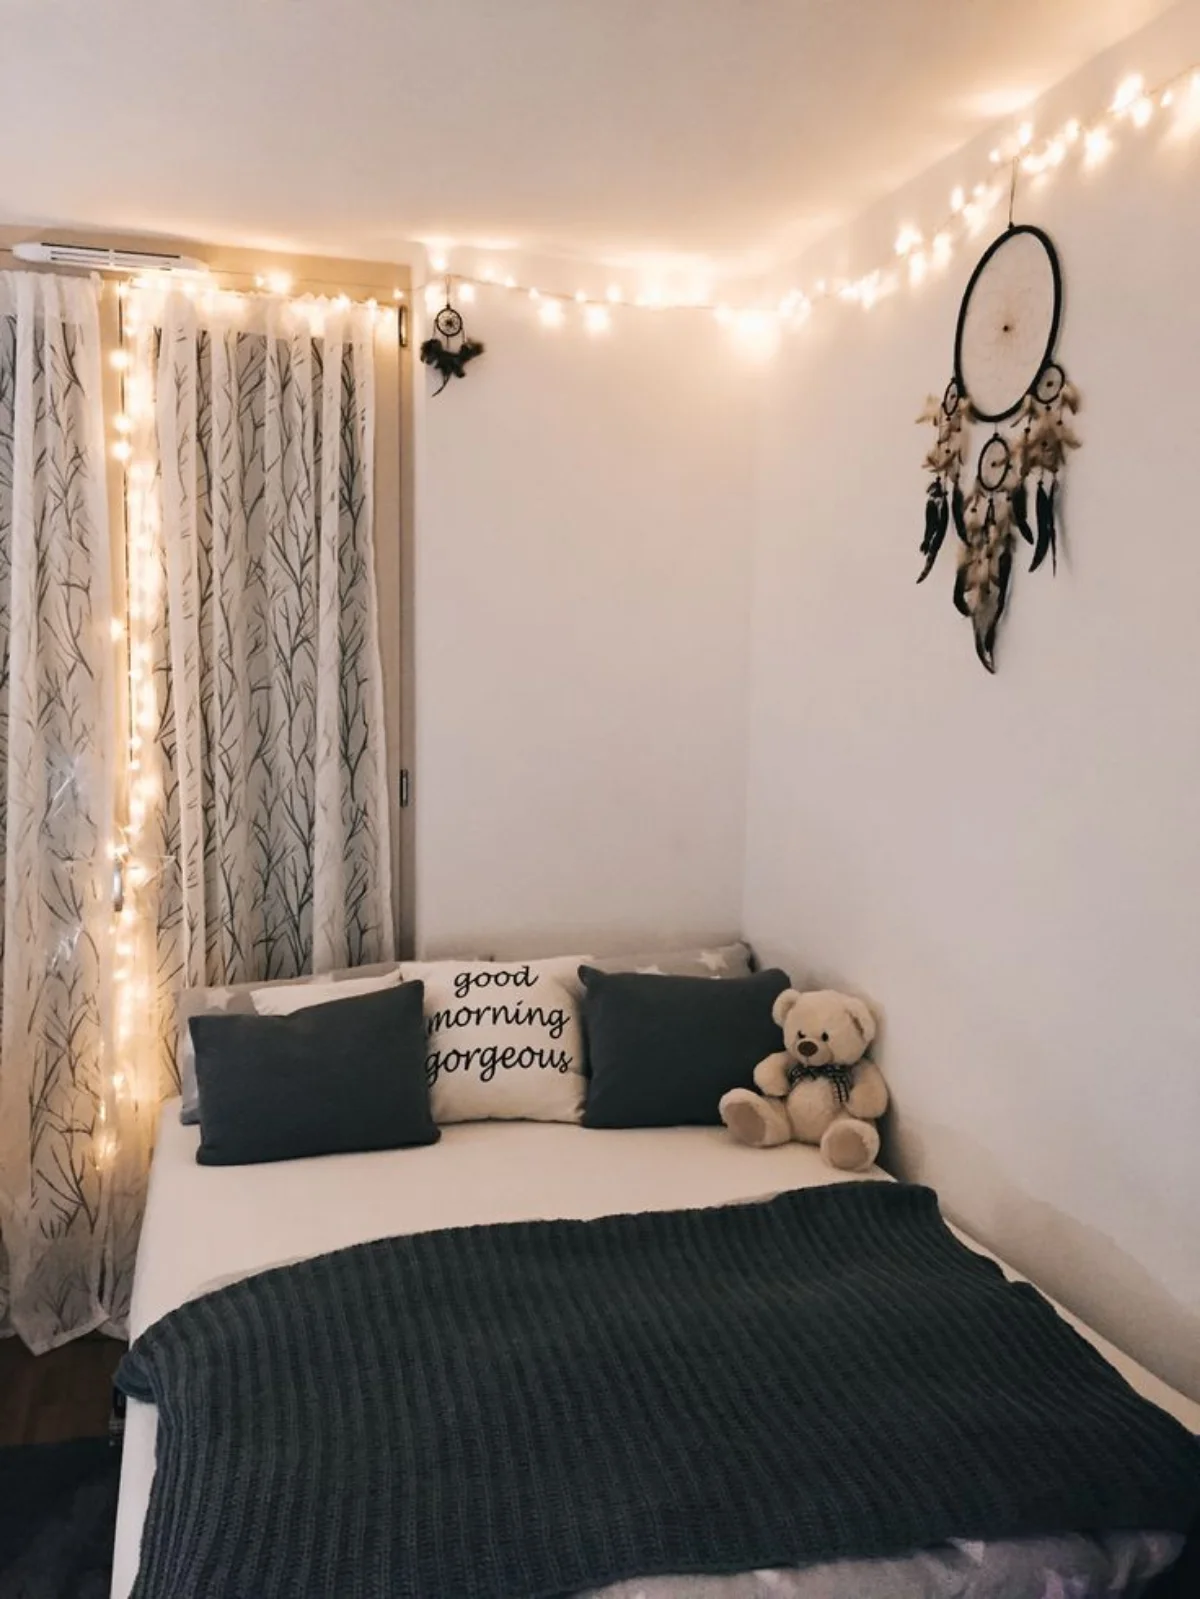 اتاق خواب دخترانه با آویز دیواری و تخت سفید مشکی